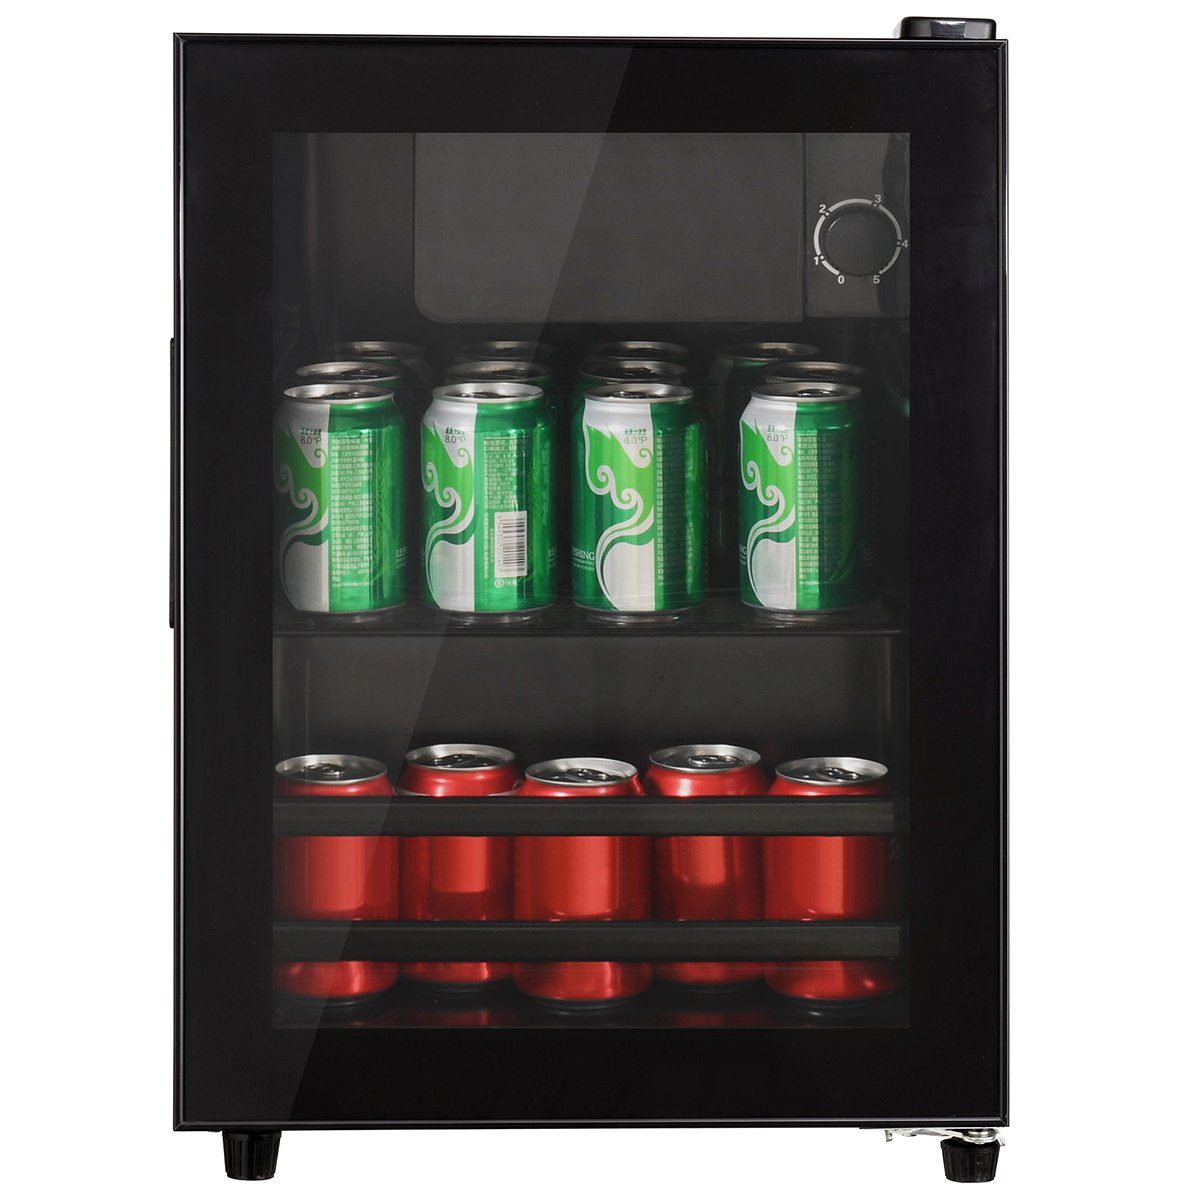 autolock Kühlschrank R600a, Kompressor-Kühlsystem energieeffizient 42 dB max